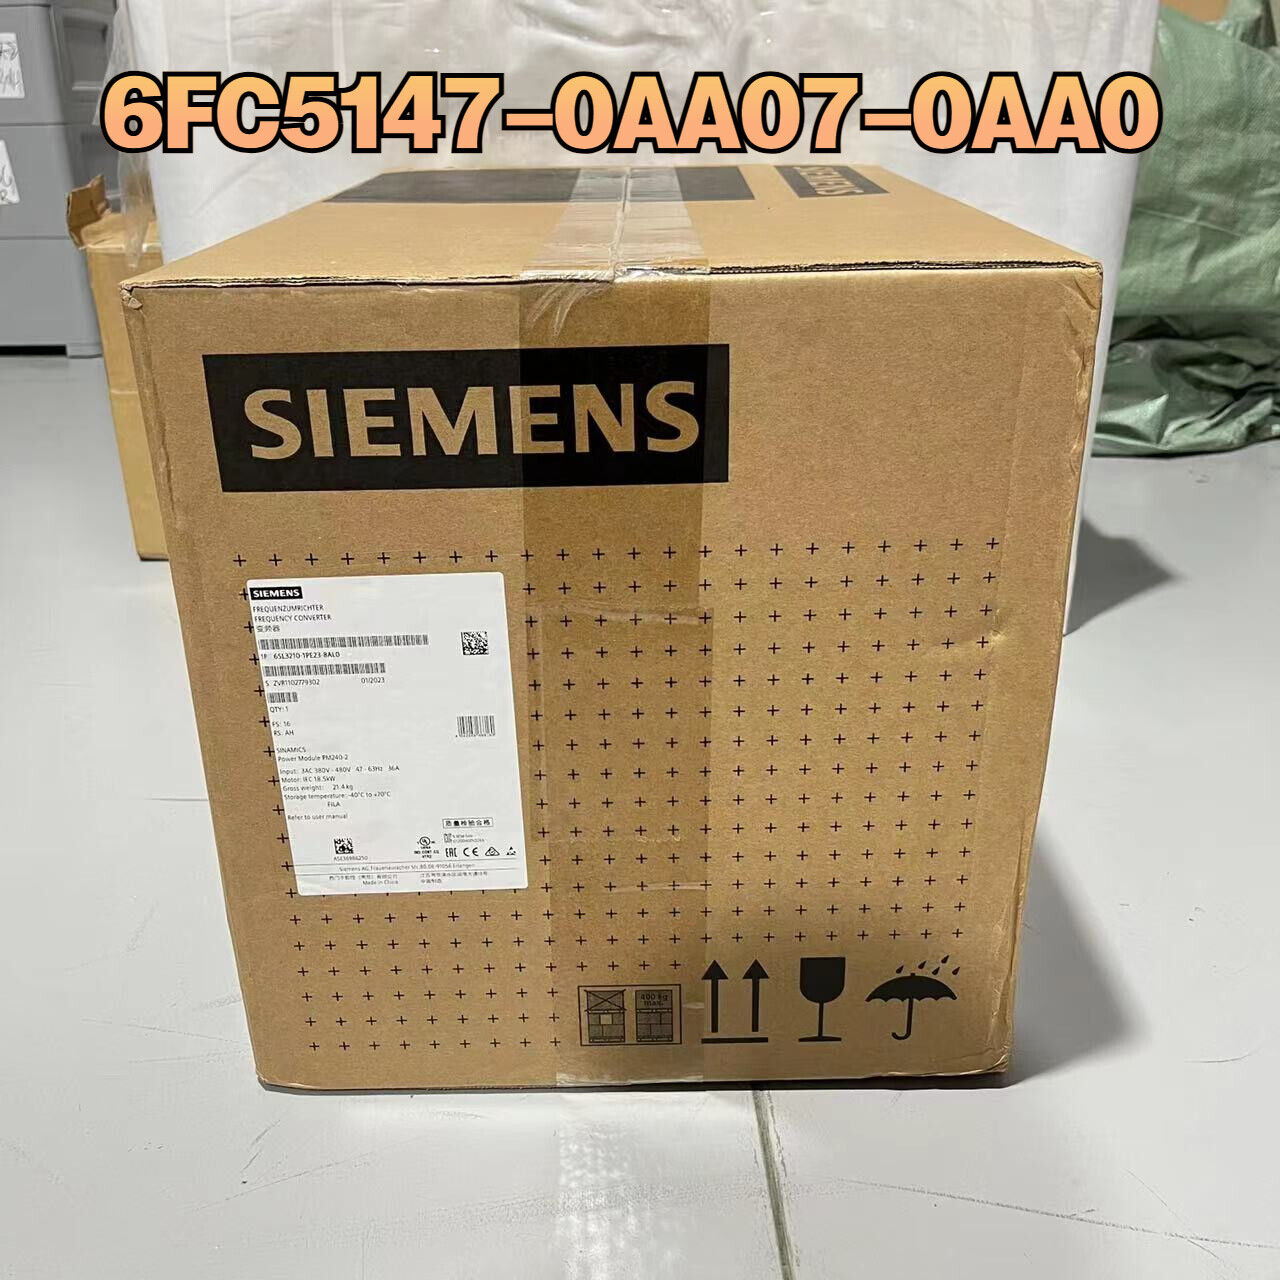 Siemens SINUMERIK 840C/840CE FAN INSERT COMPLETE 1.5W 6FC5147-0AA07-0AA0